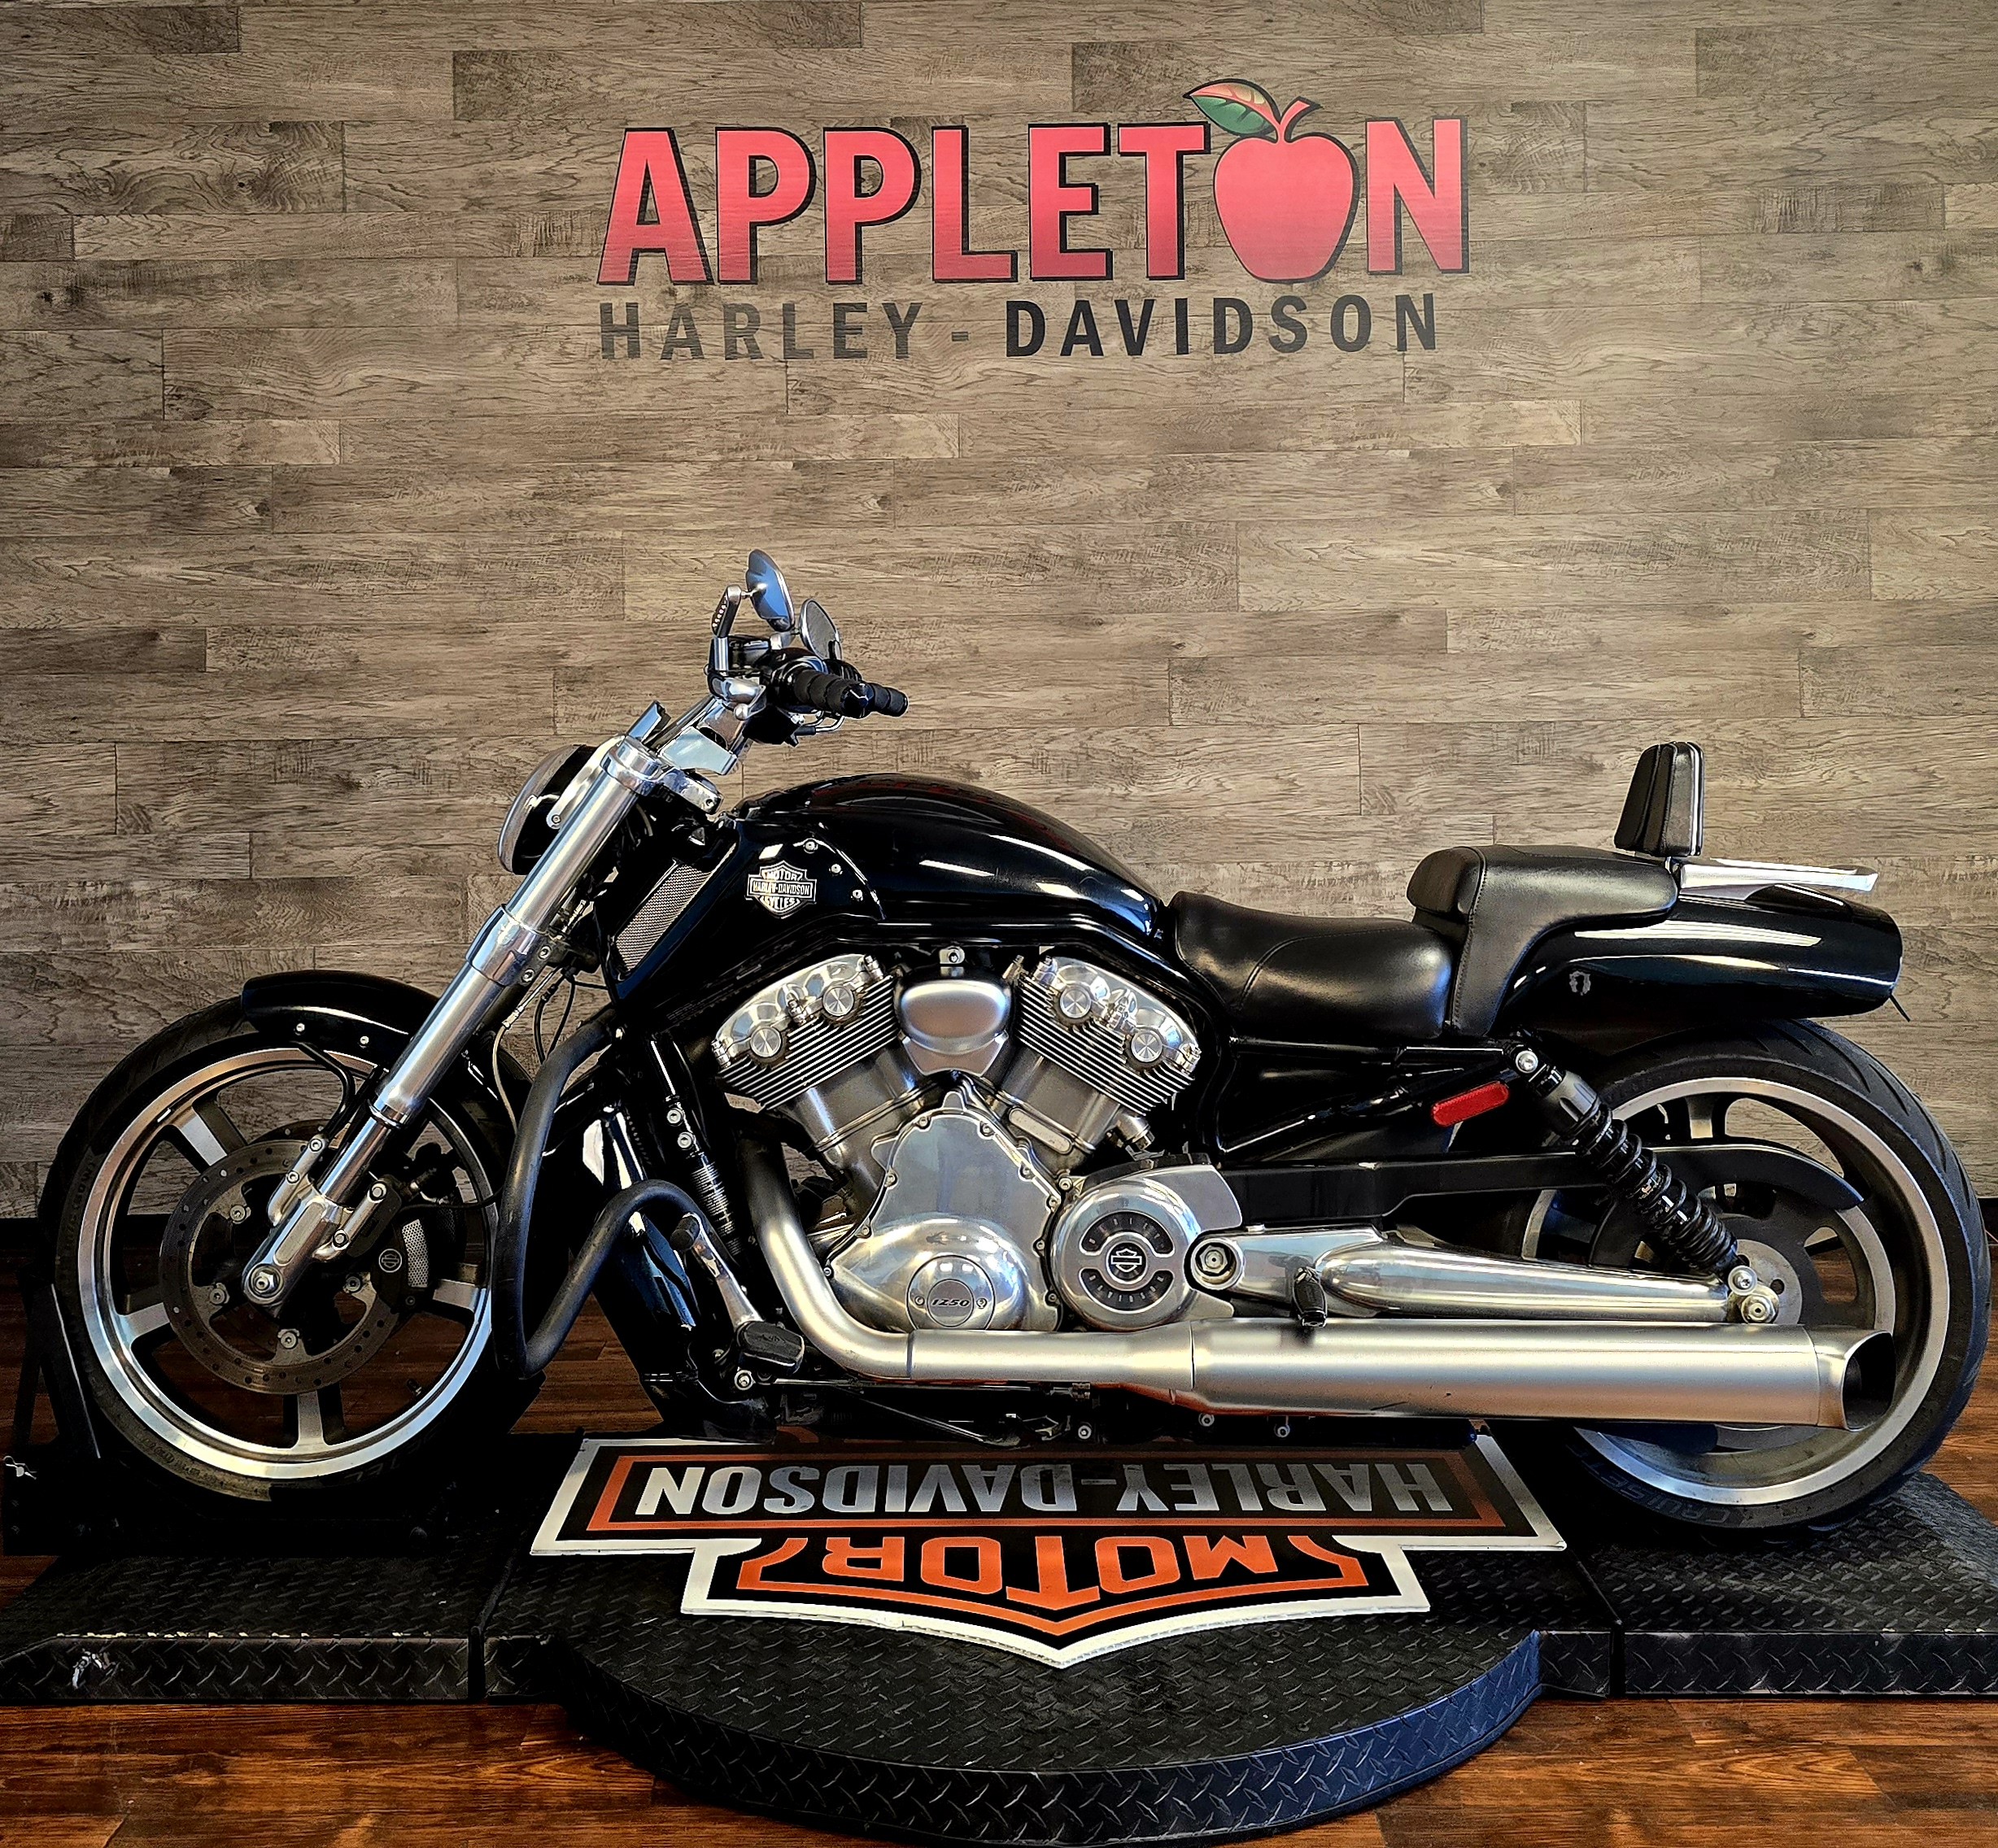 2015 Harley-Davidson V-Rod V-Rod Muscle at Appleton Harley-Davidson